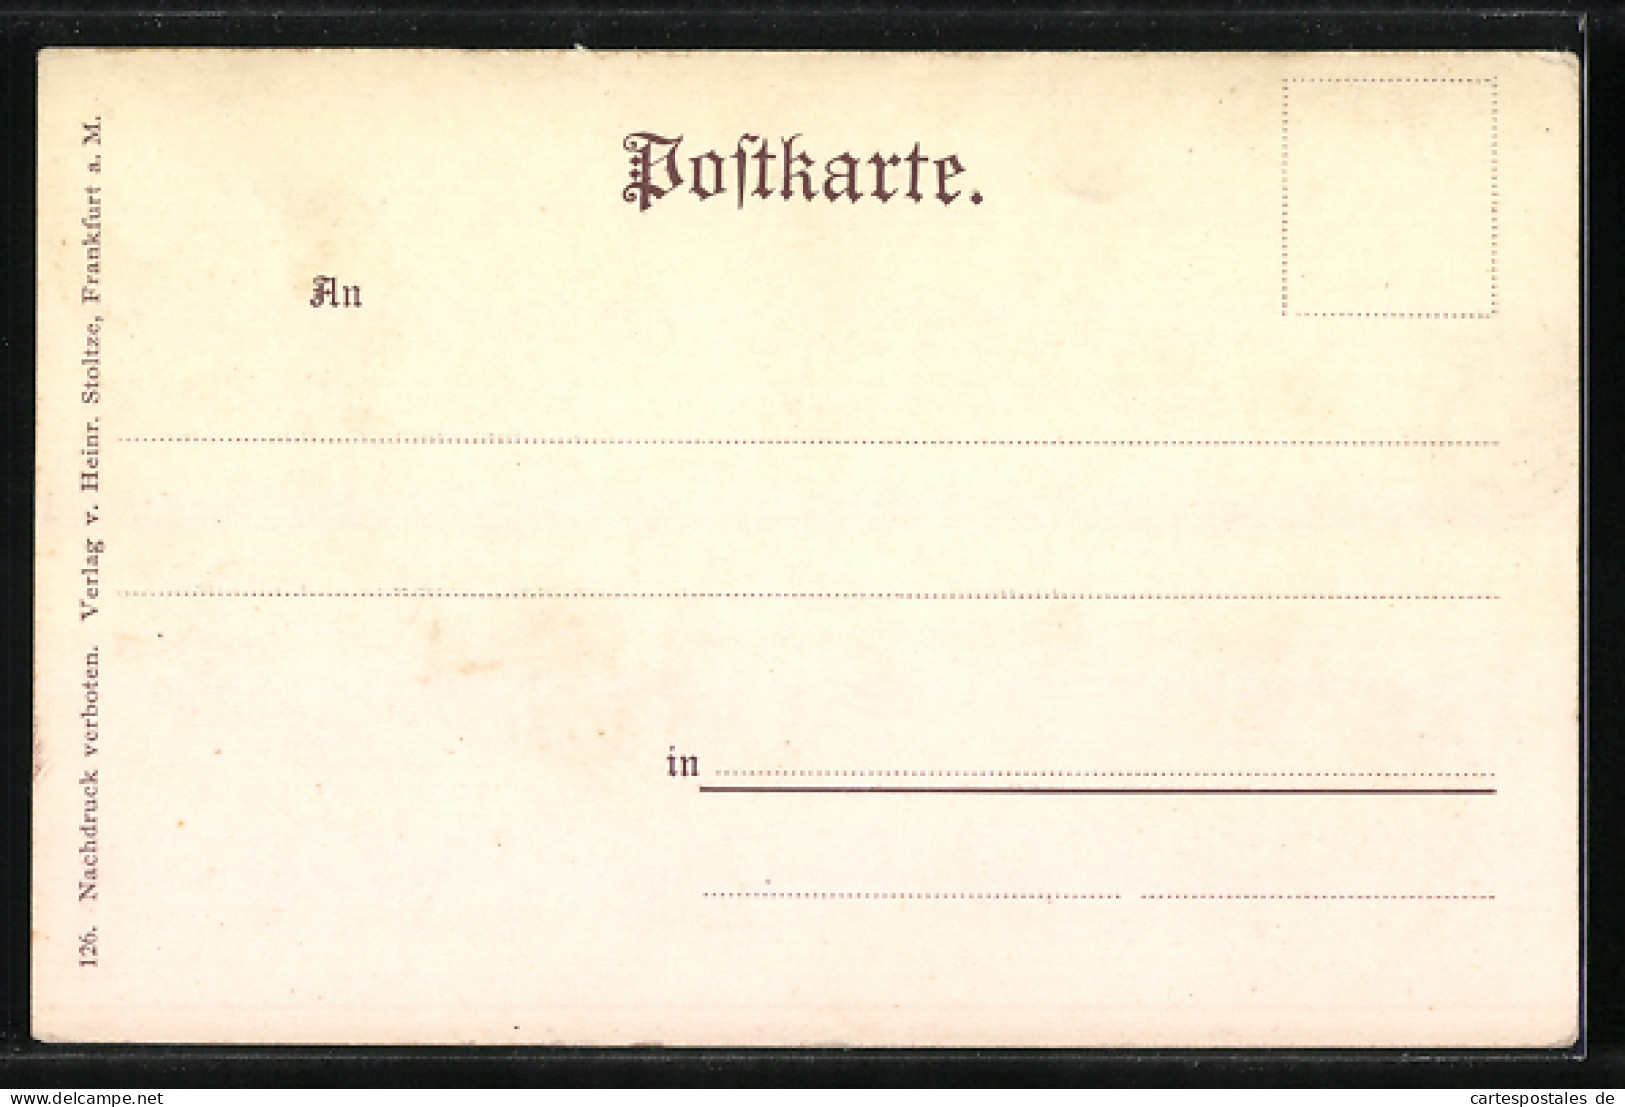 AK Deutsche Dichter Und Schriftsteller, 1800-1900, Freitag, Rückert Und Heine  - Ecrivains